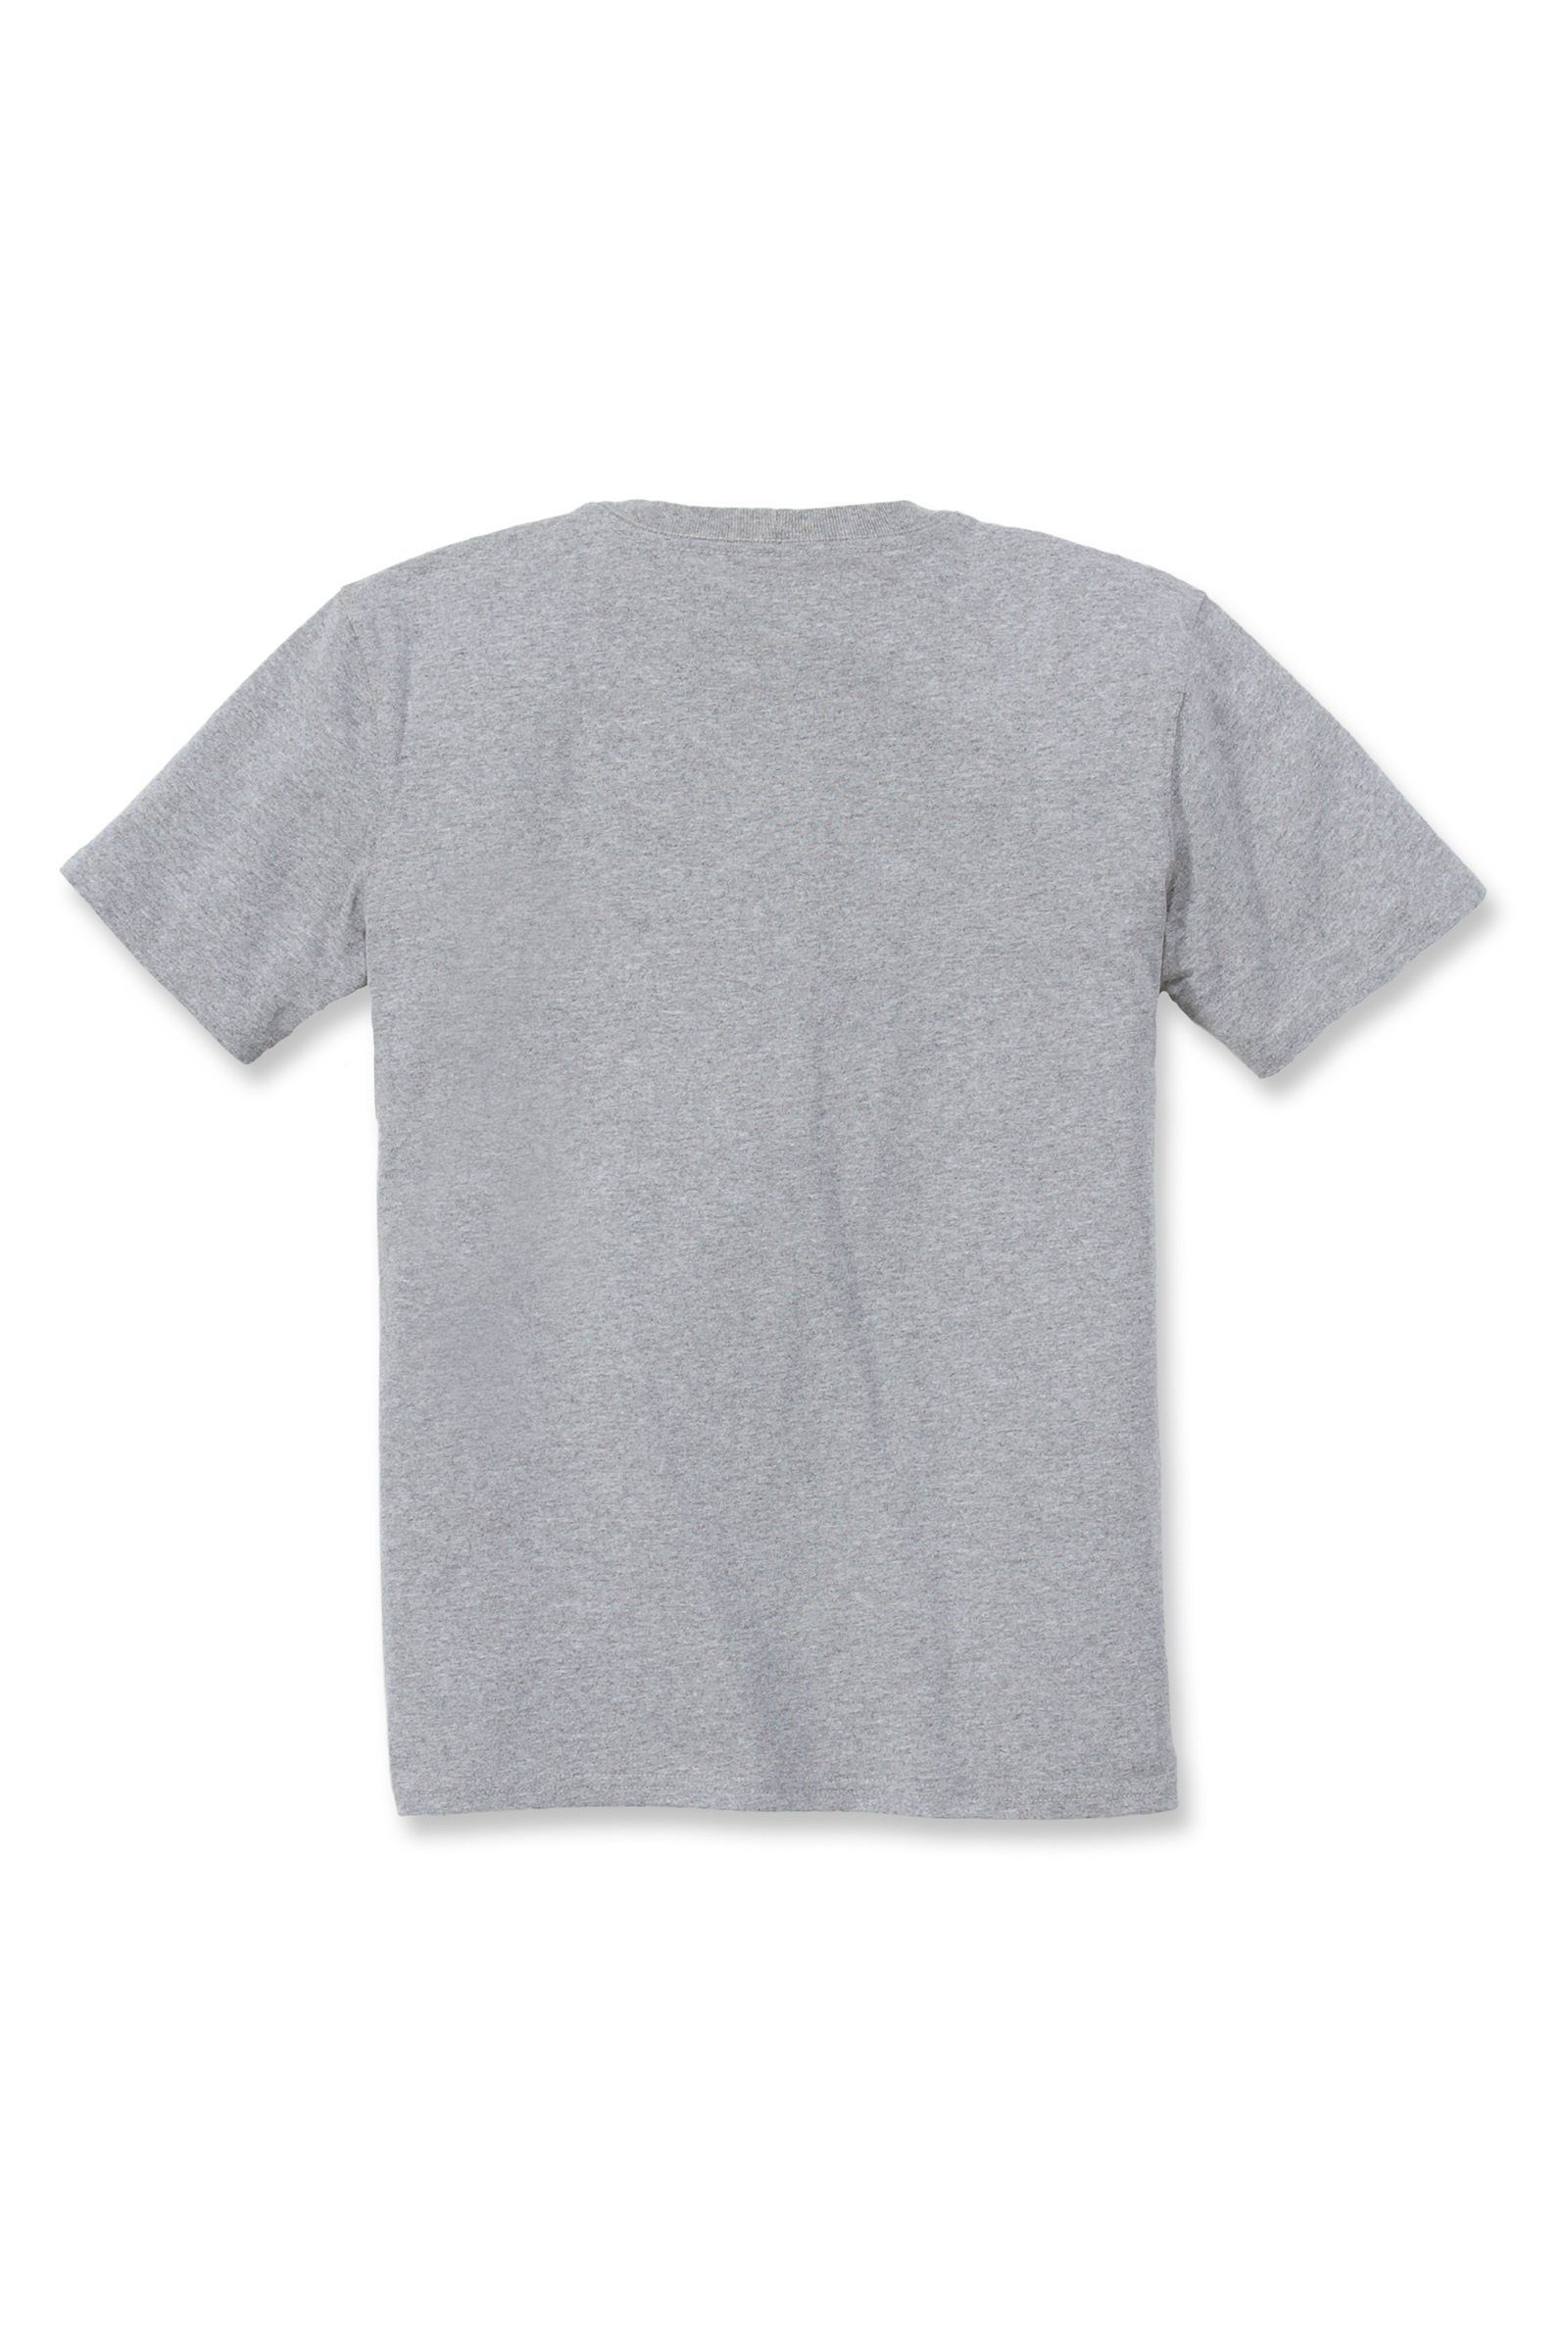 Carhartt T-Shirt Carhartt Adult Heavyweight Short-Sleeve Loose Fit T-Shirt grey Pocket Damen heather